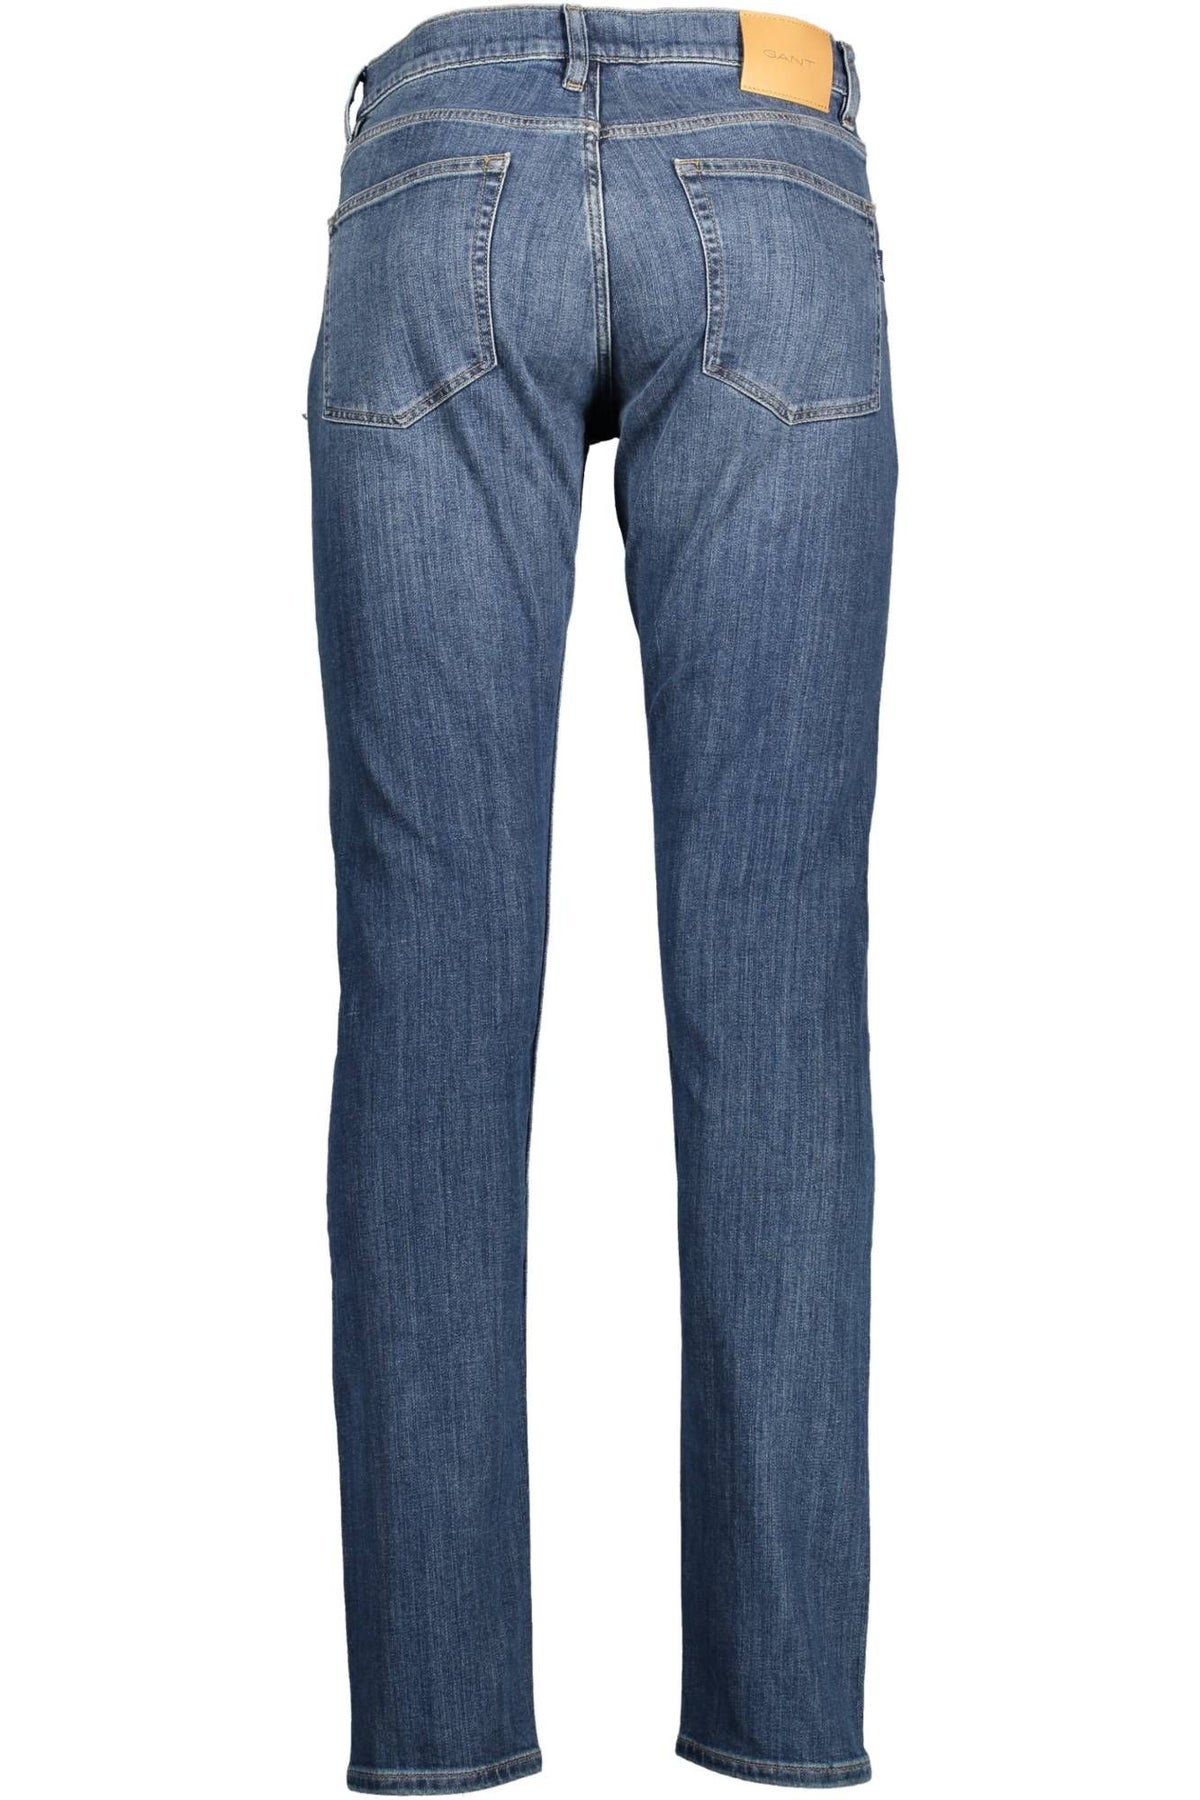 Gant – Schicke Slim-Fit-Jeans in verwaschenem Blau